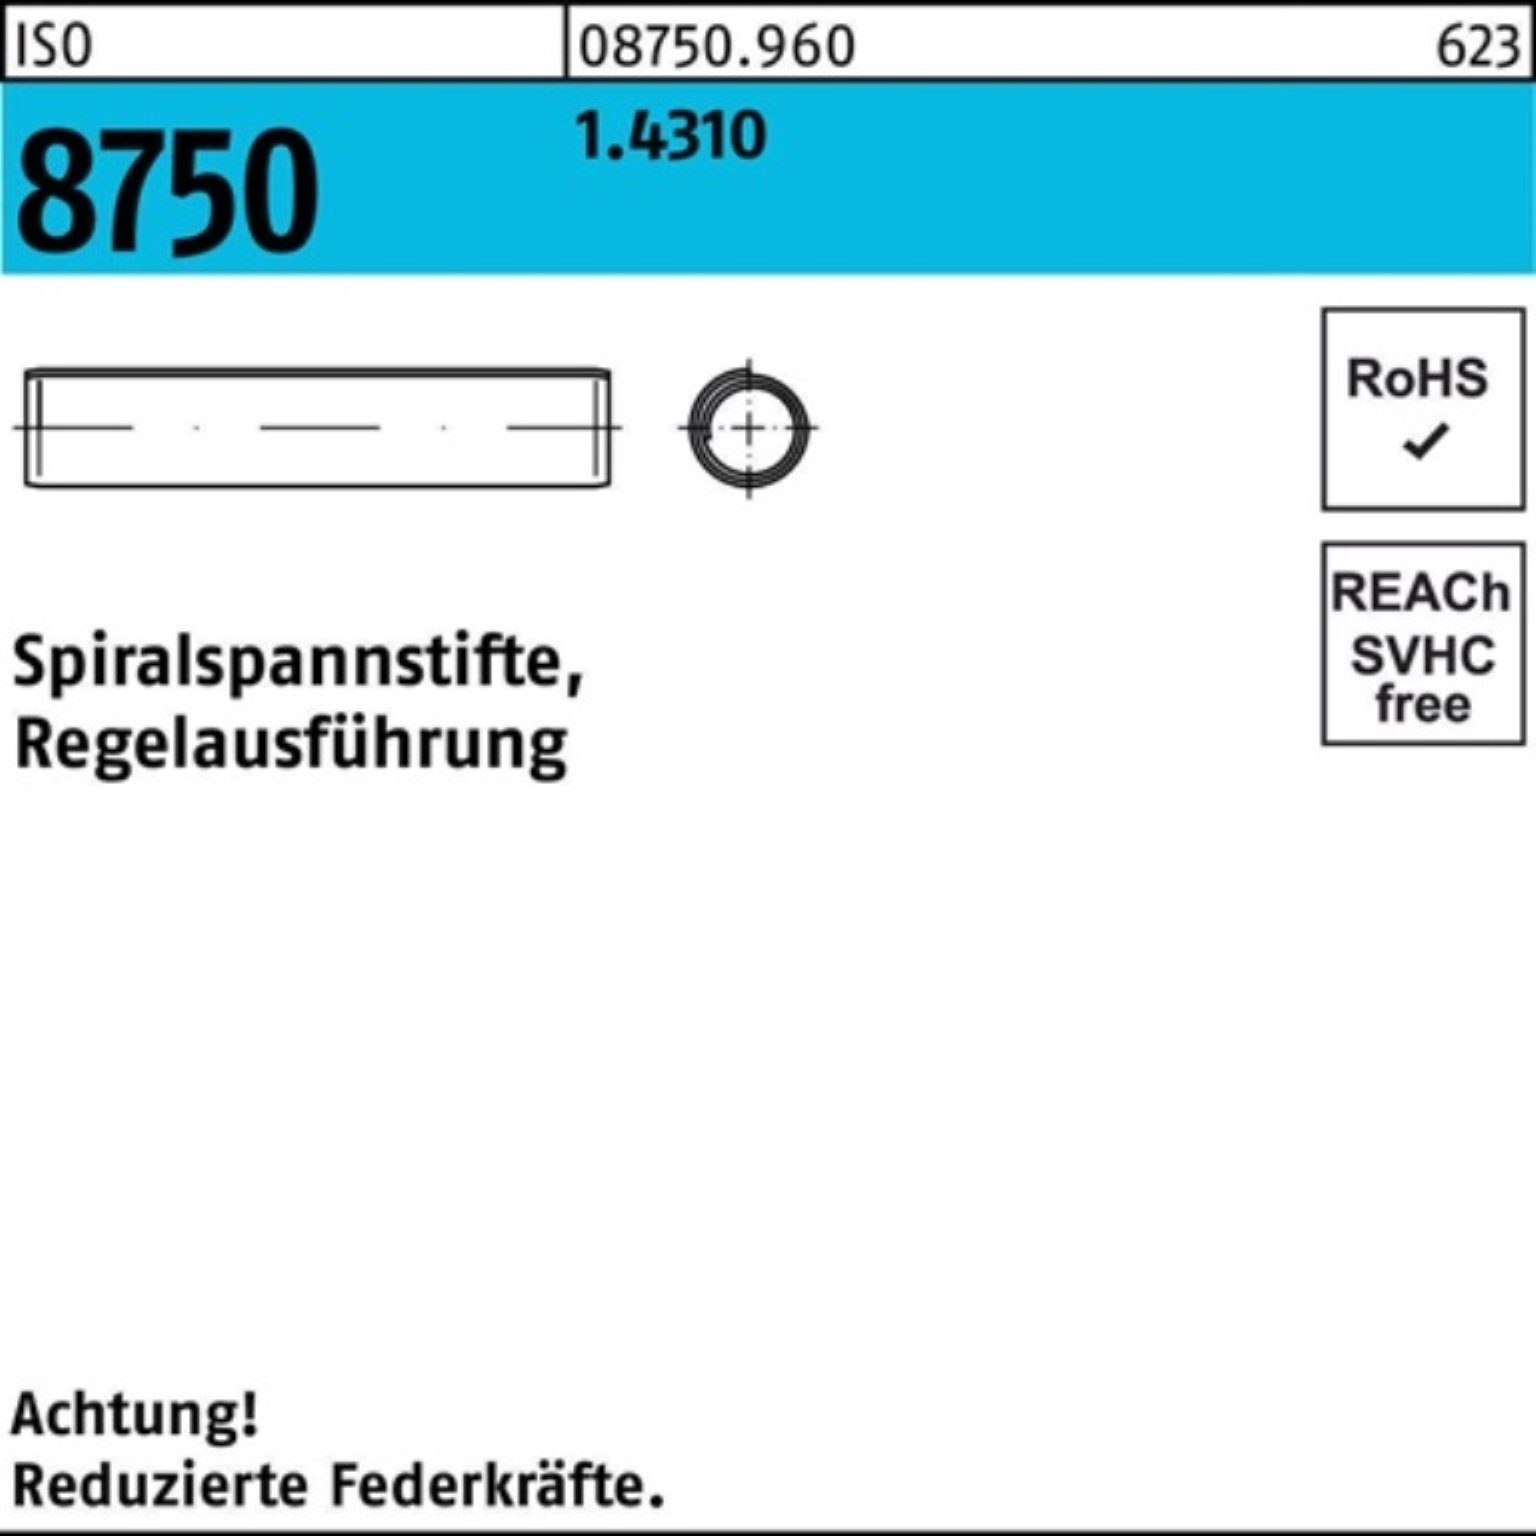 Reyher Spannstift 500er ISO Pack 8750 Regelausf. 32 Stüc 500 Spiralspannstift 1.4310 6x